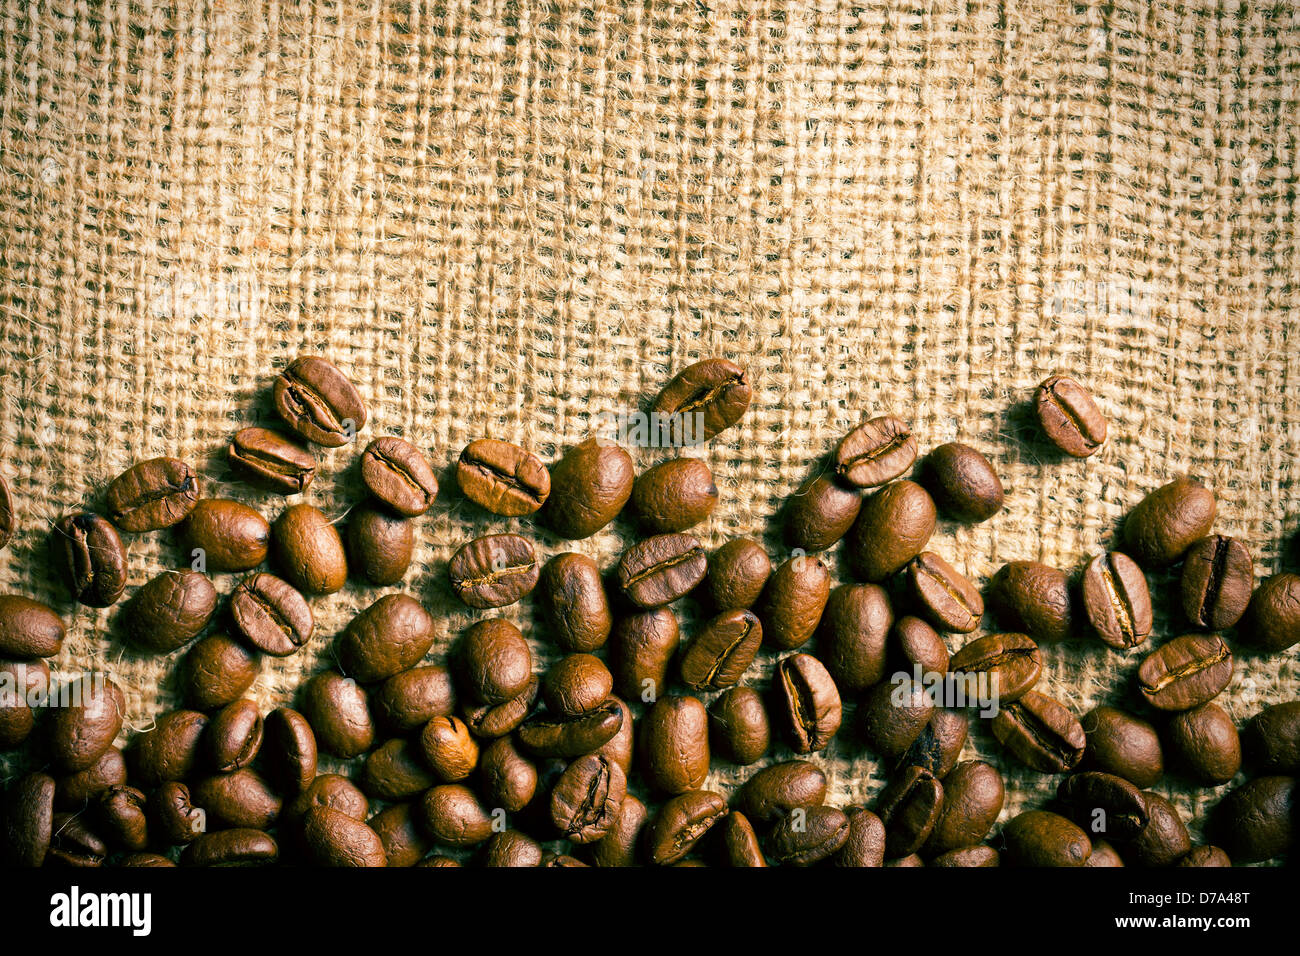 Les grains de café sur fond de toile Banque D'Images